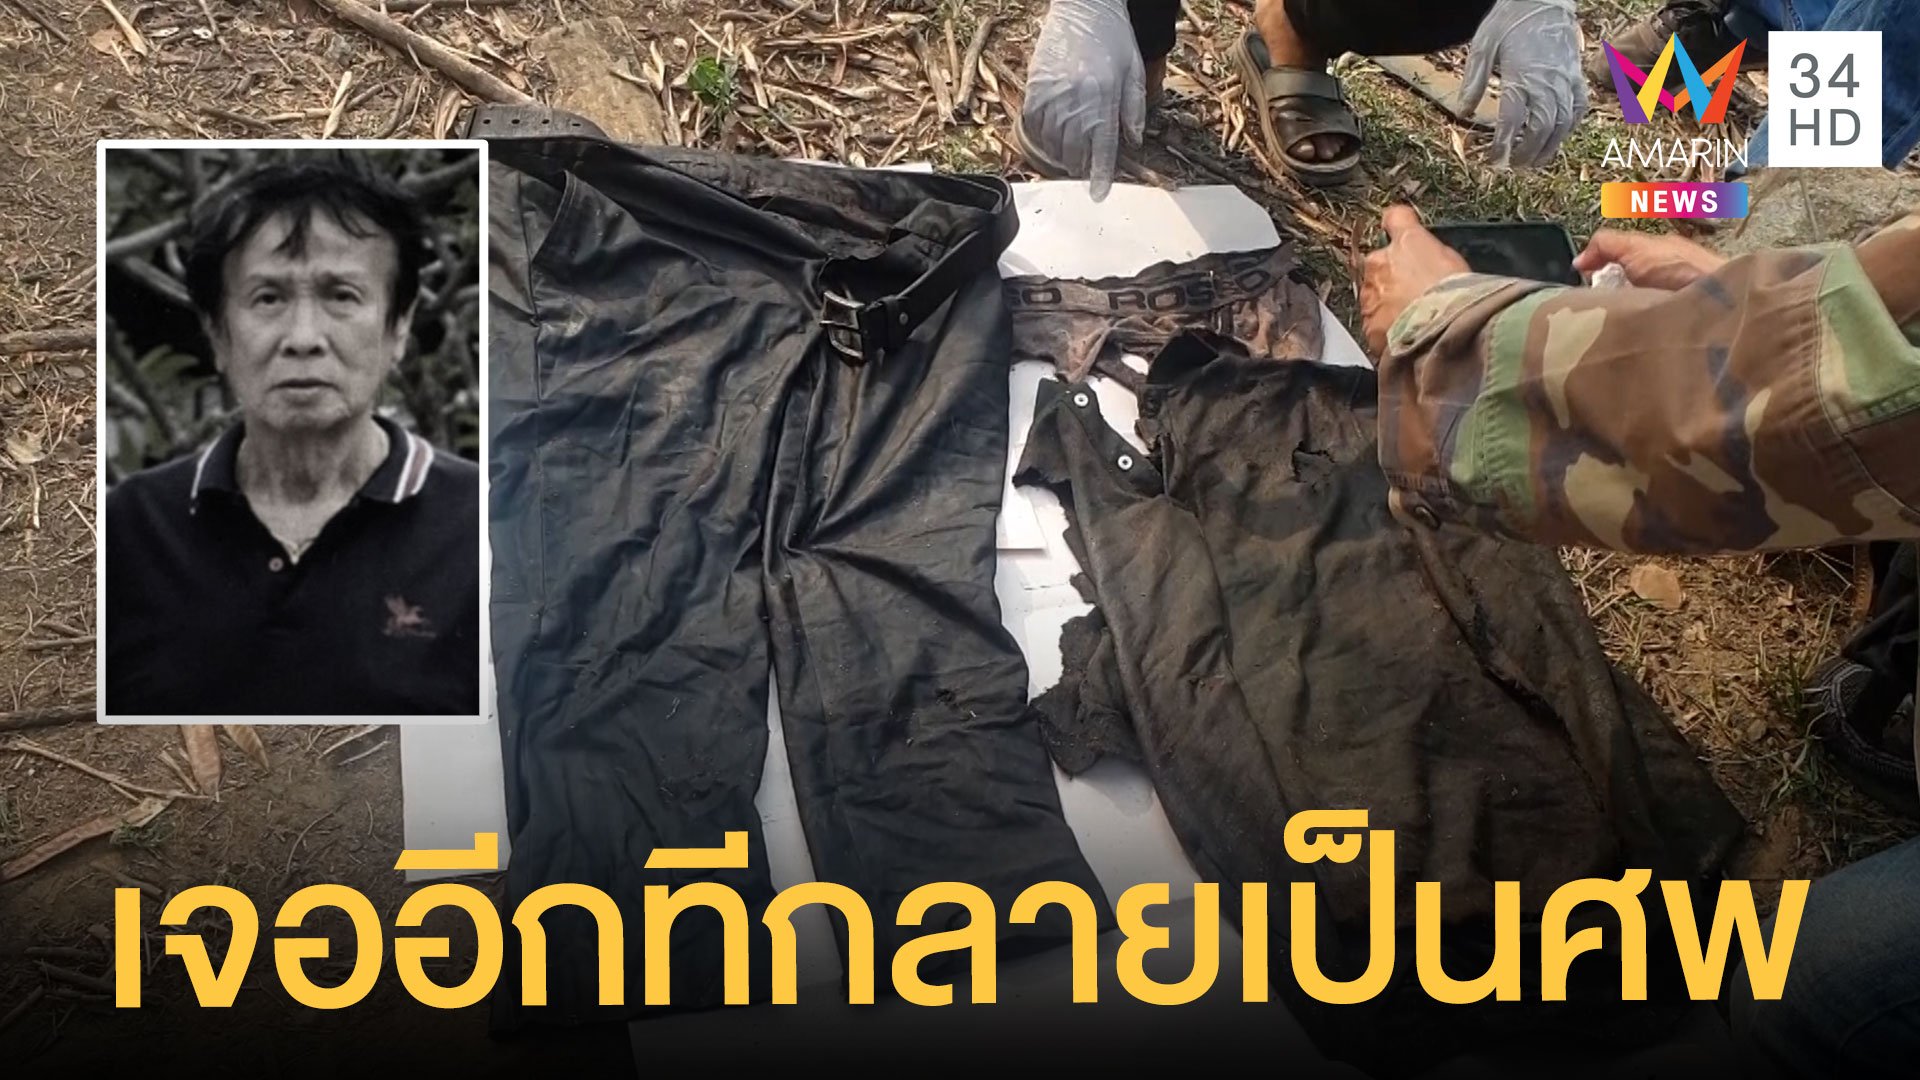 สลด ตาวัย 71 หายตัวกว่า 1 เดือน พบอีกทีเป็นศพในป่า | ข่าวเที่ยงอมรินทร์ | 18 มี.ค. 64 | AMARIN TVHD34